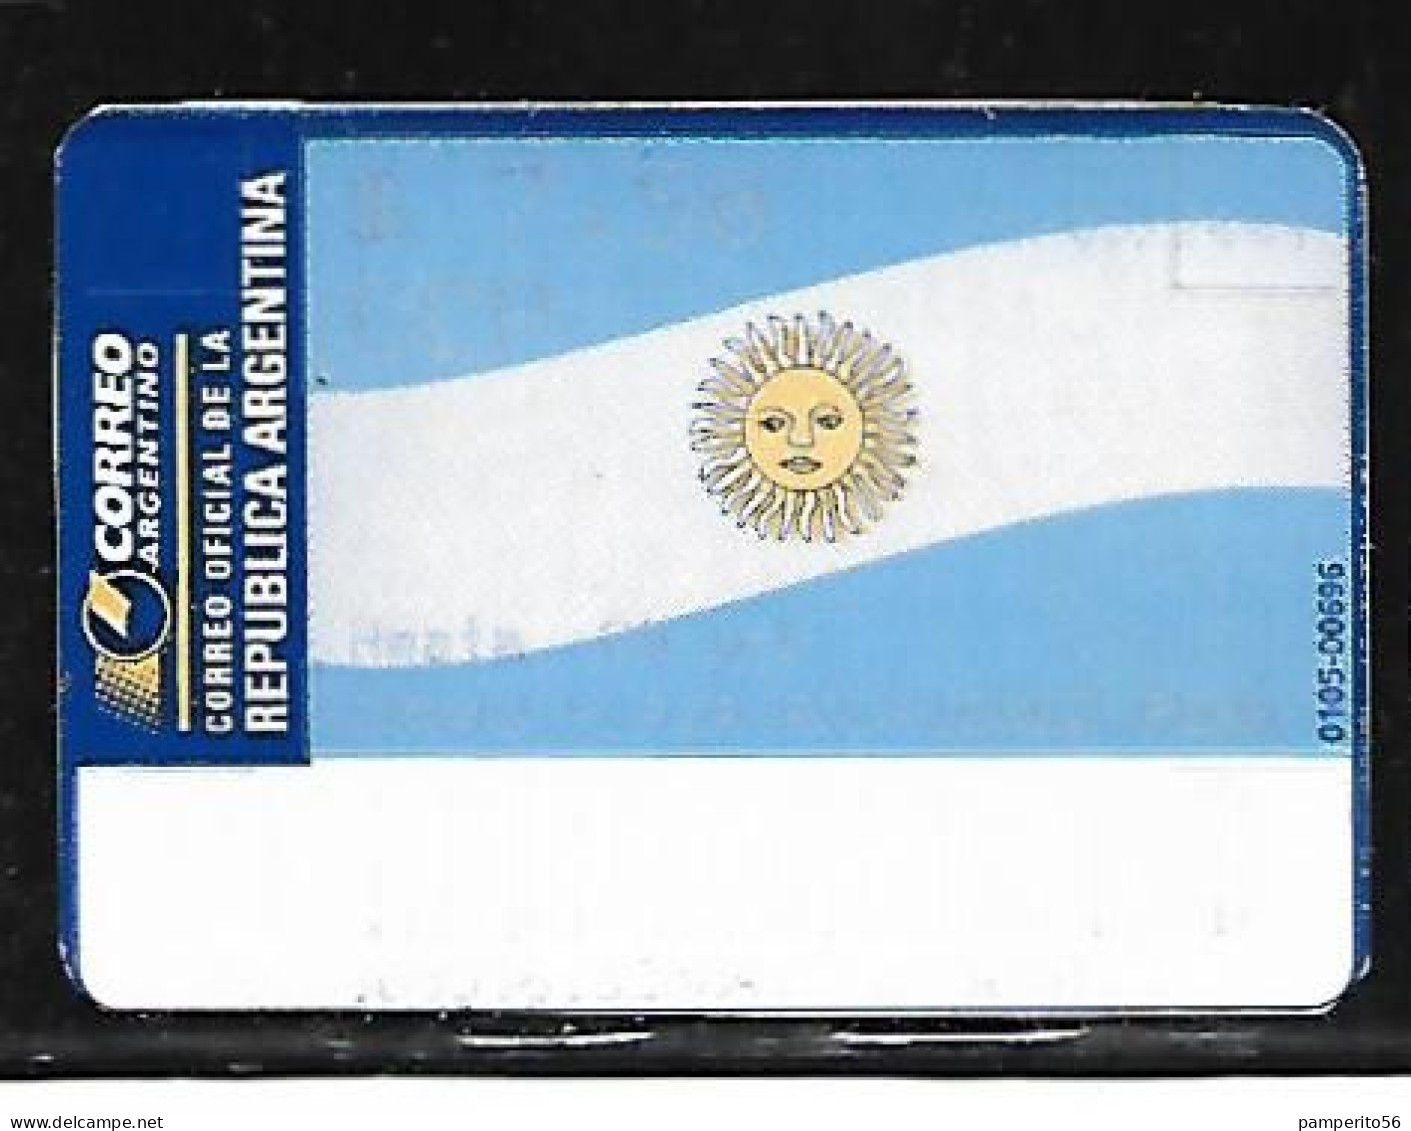 ARGENTINA - AÑO 2002 - Etiqueta De Franqueo CCP 20 Grs - Rodriguez Peña - Vignettes D'affranchissement (Frama)